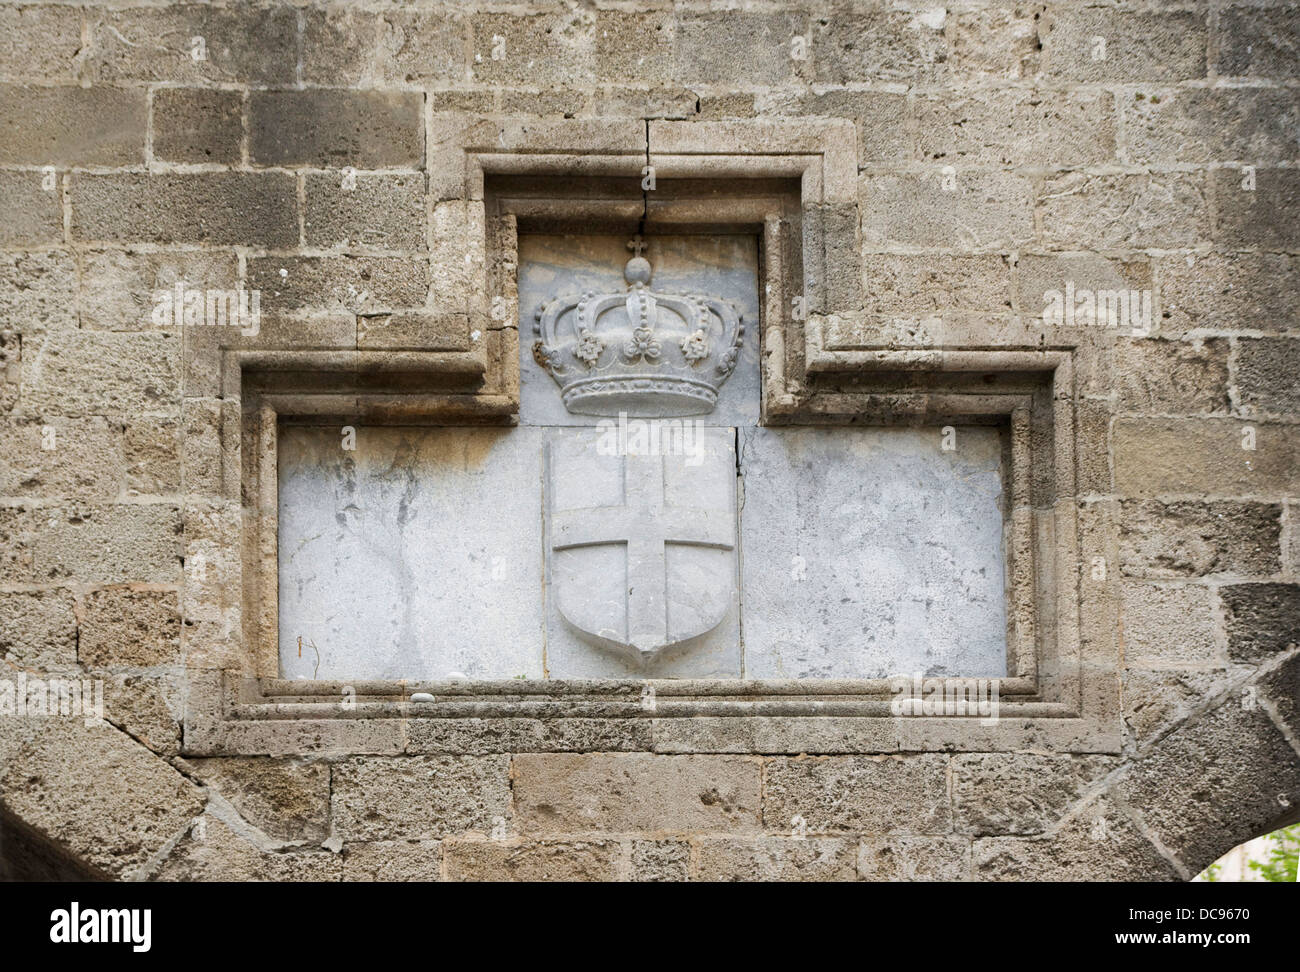 Les armoiries royales de la Maison de Savoie sur les murs de la ville de Rhodes, en Grèce, au cours de l'occupation italienne de l'île. Banque D'Images